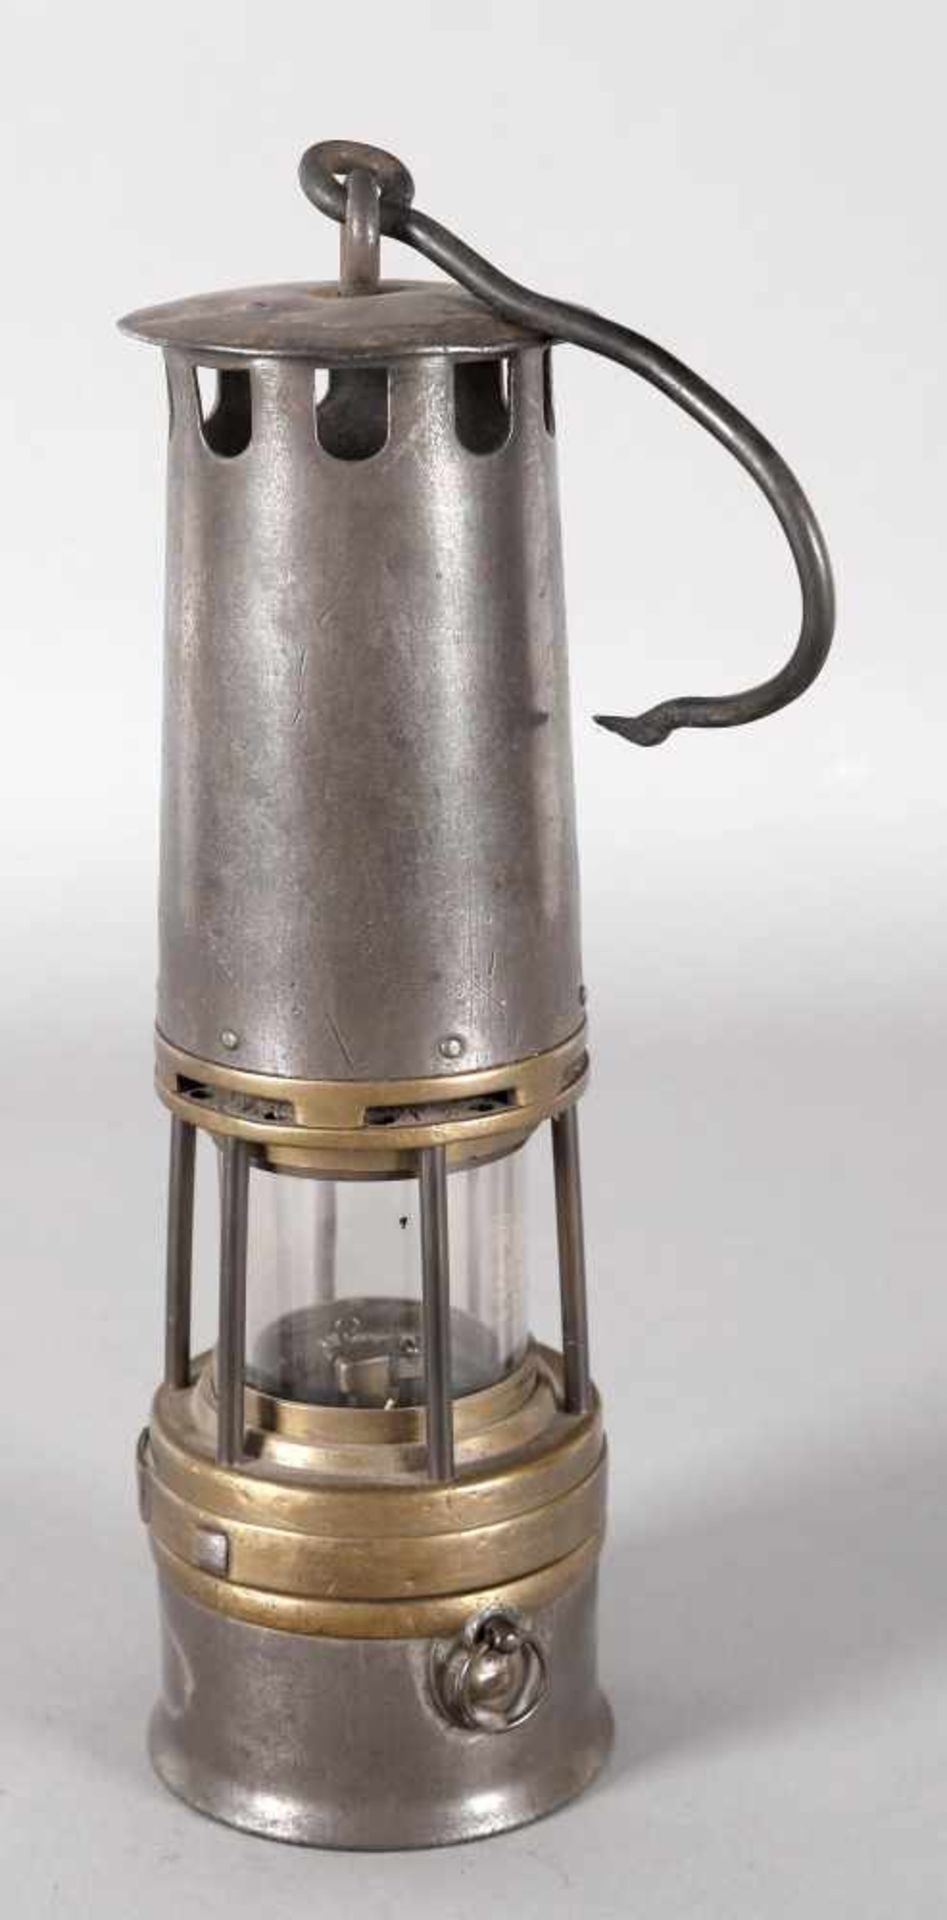 Benzinwetterlampe, Arras, um 1930-35Eisen und Messing, Feuersteinzünder von der Topfseite zu